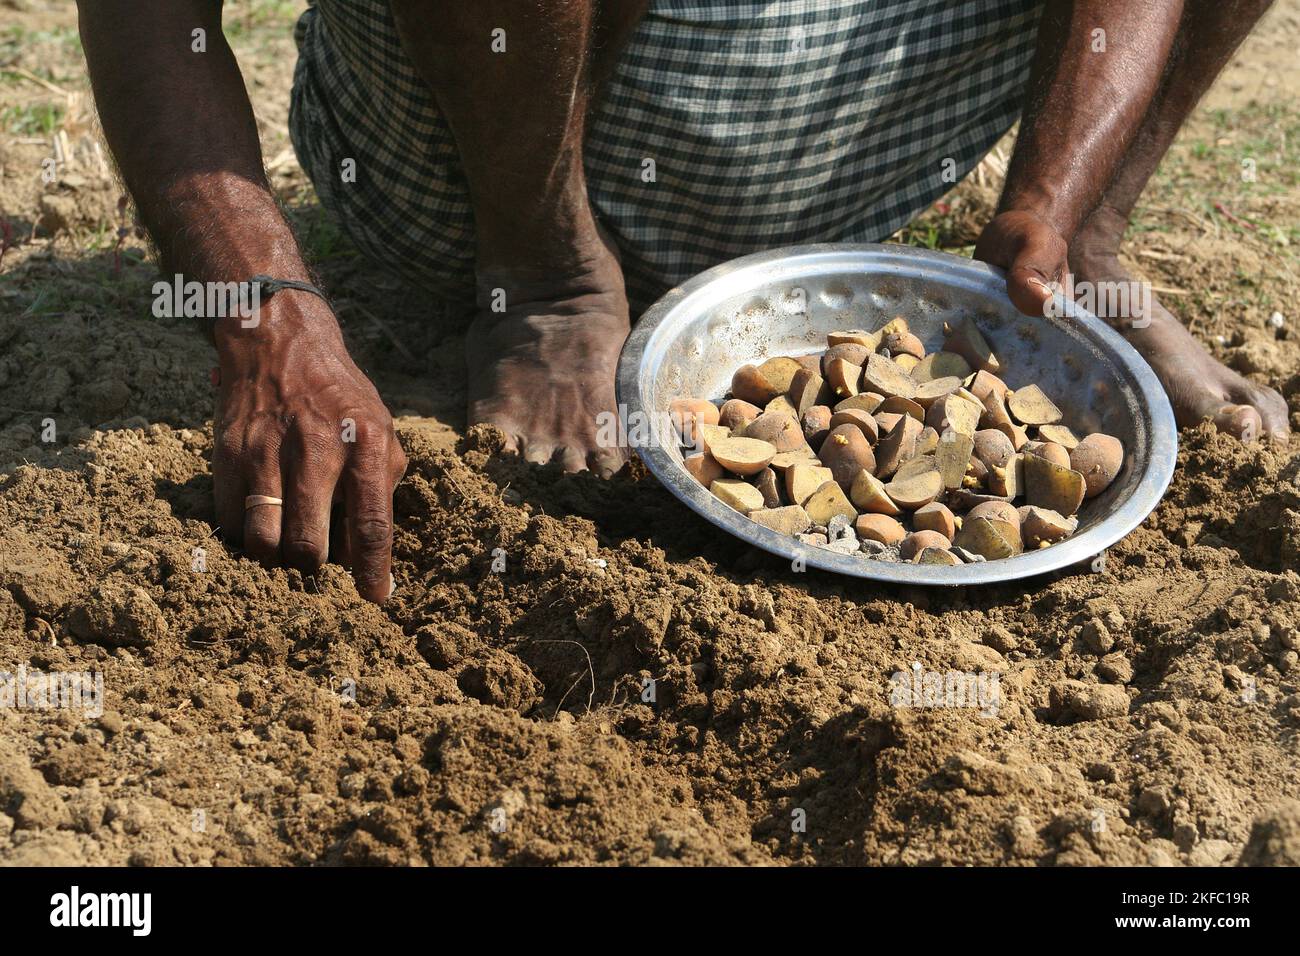 Agriculteurs plantant dans un champ de pommes de terre. Dumuria, Khulna, Bangladesh. Banque D'Images